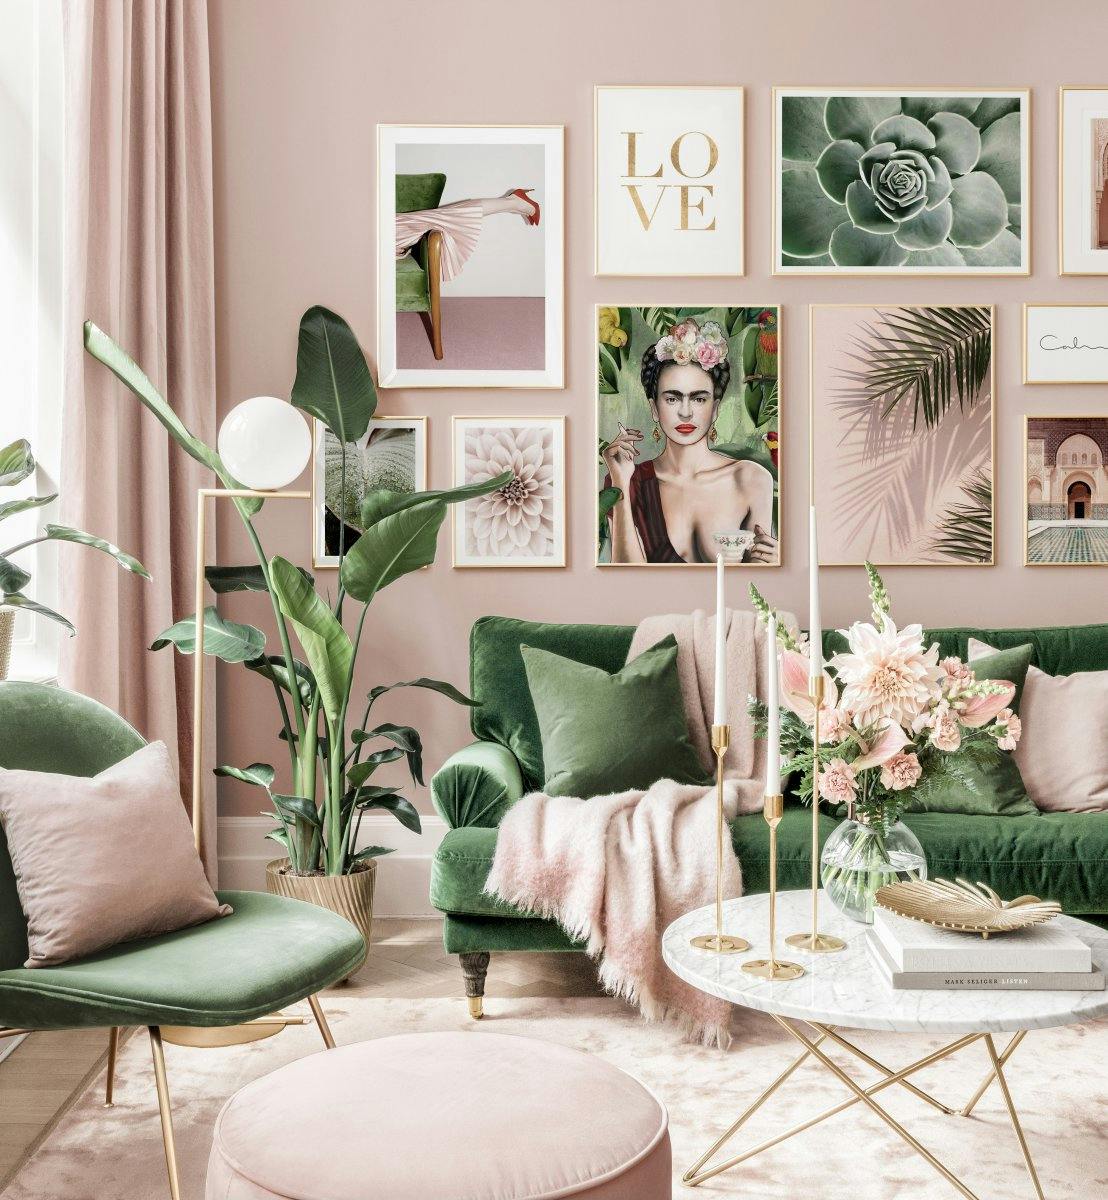 Stijlvolle Fotowand roze groene woonkamer Frida poster gouden Fotolijsten